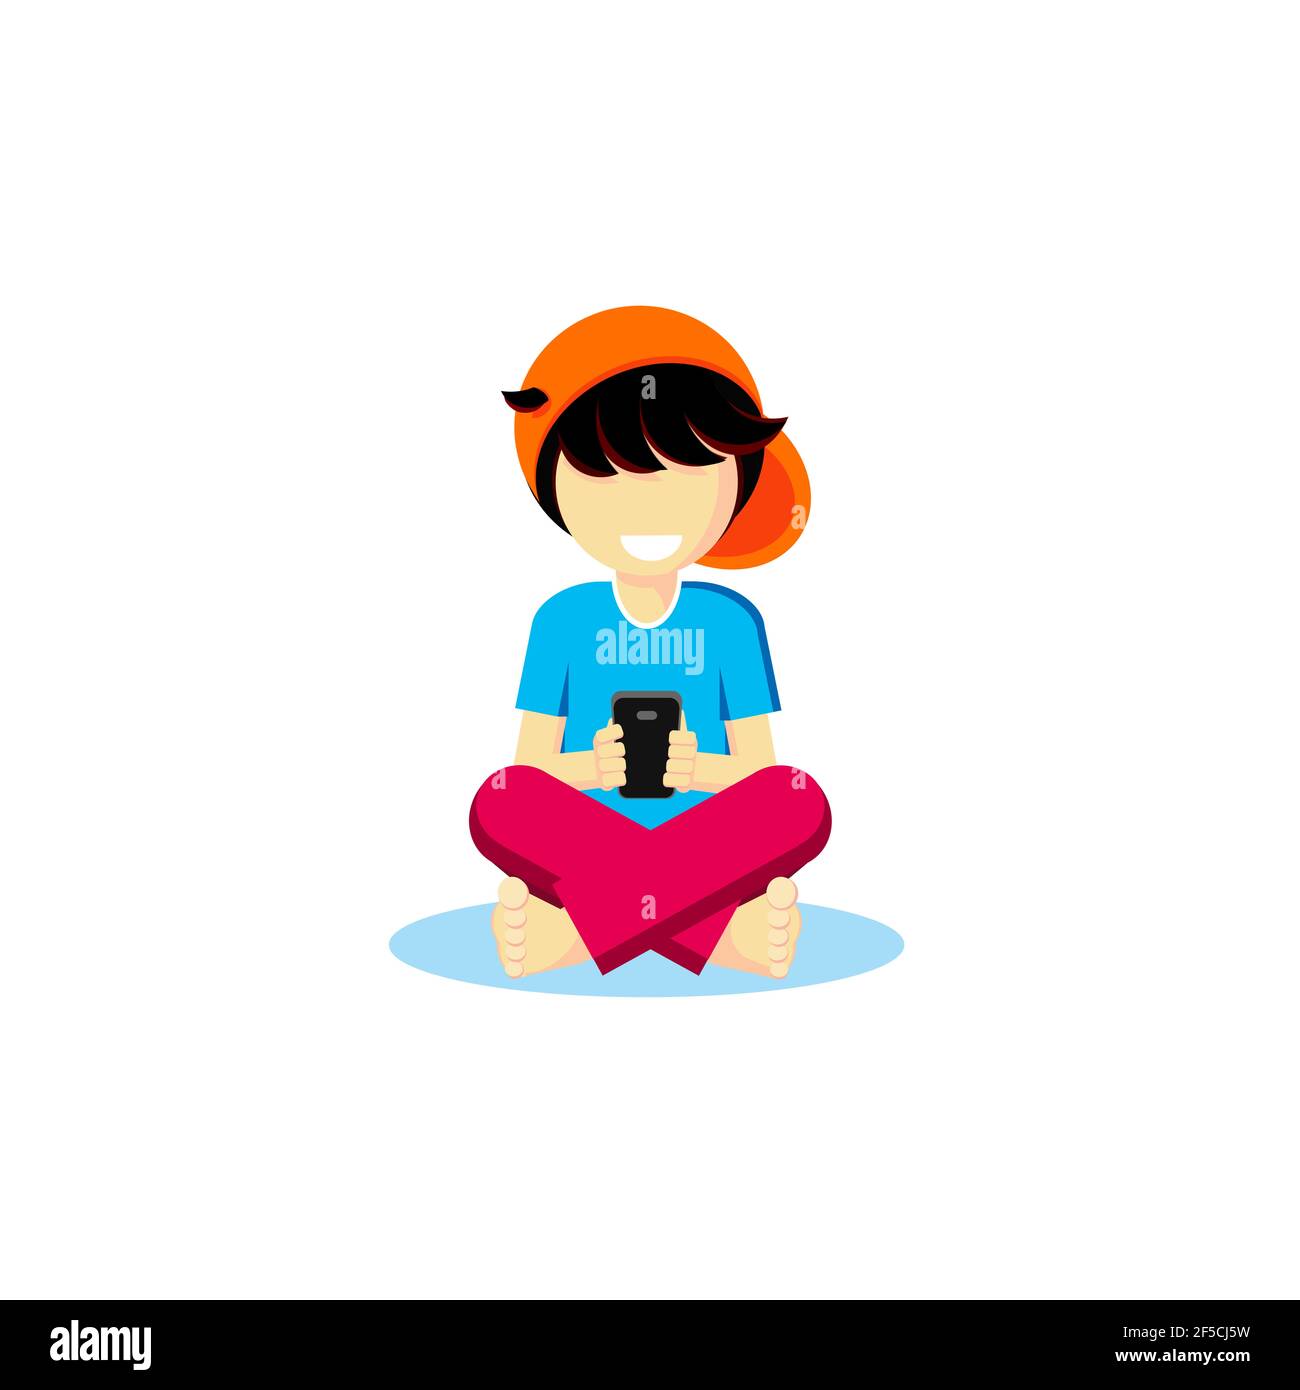 Vector Junge barfuß dunkle Haare sitzt mit gekreuzten Beinen spielt Handy Smartphone sieht lächelt lacht Freude Kind Kindheit Student Freizeit Hobby Spiele Stockfoto